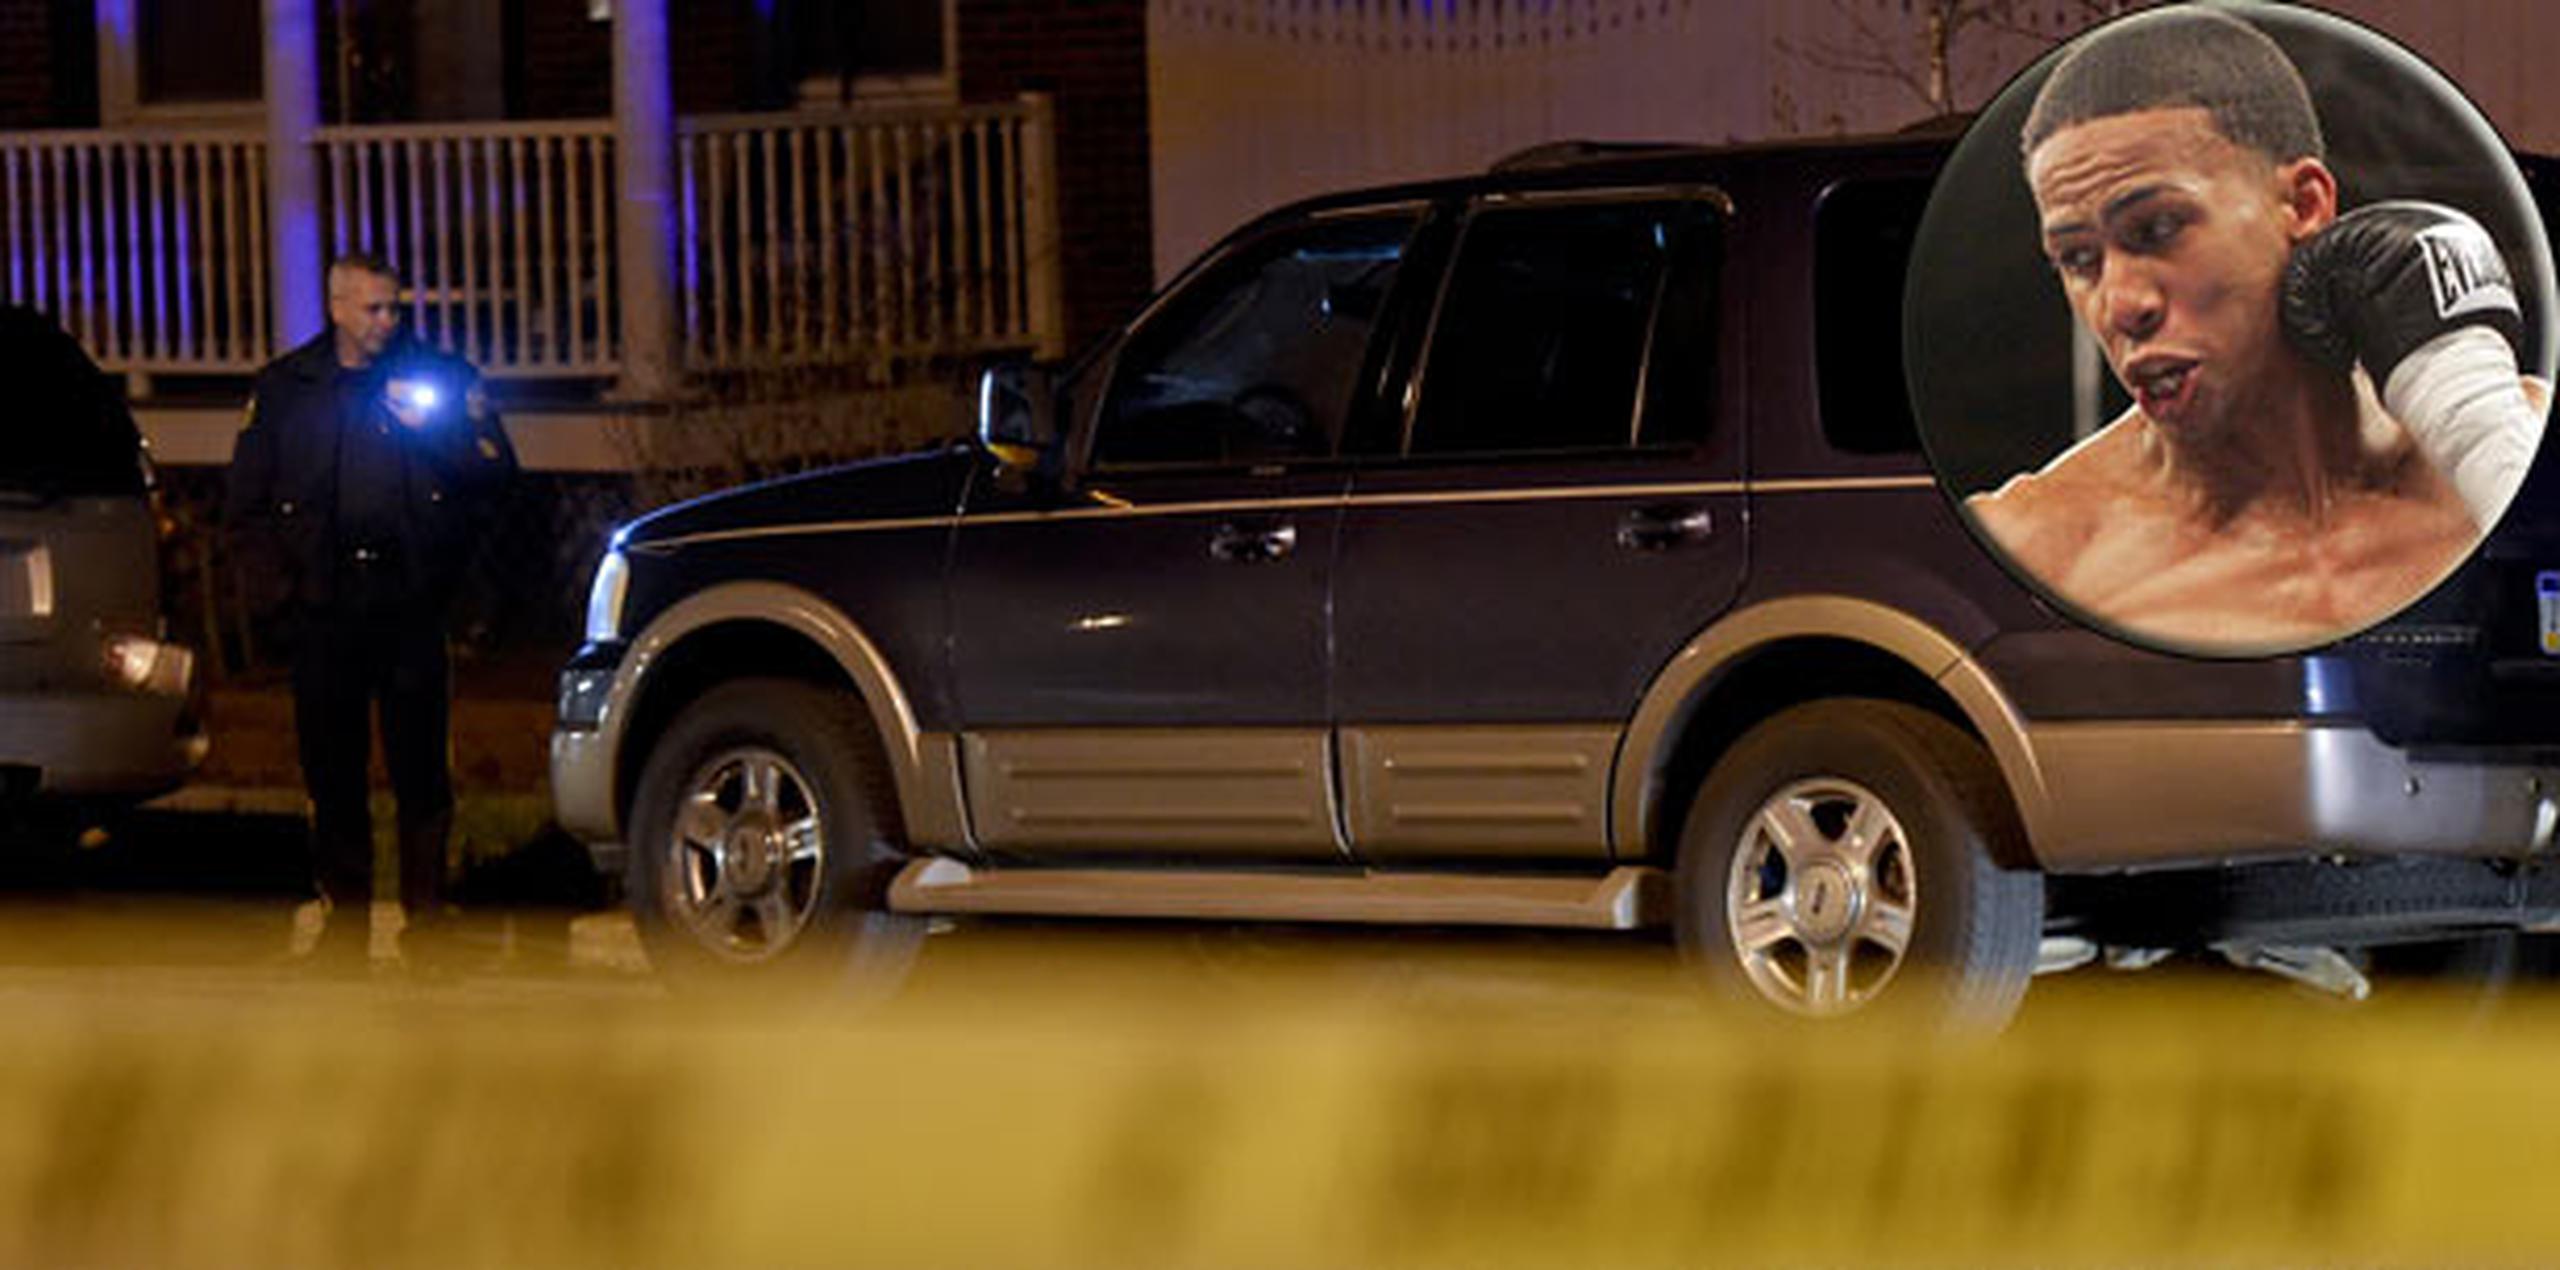 El cuerpo sin vida de Correa fue encontrado la noche del pasado jueves dentro de un vehículo. (Foto: Suministrada/The Reading Eagle)